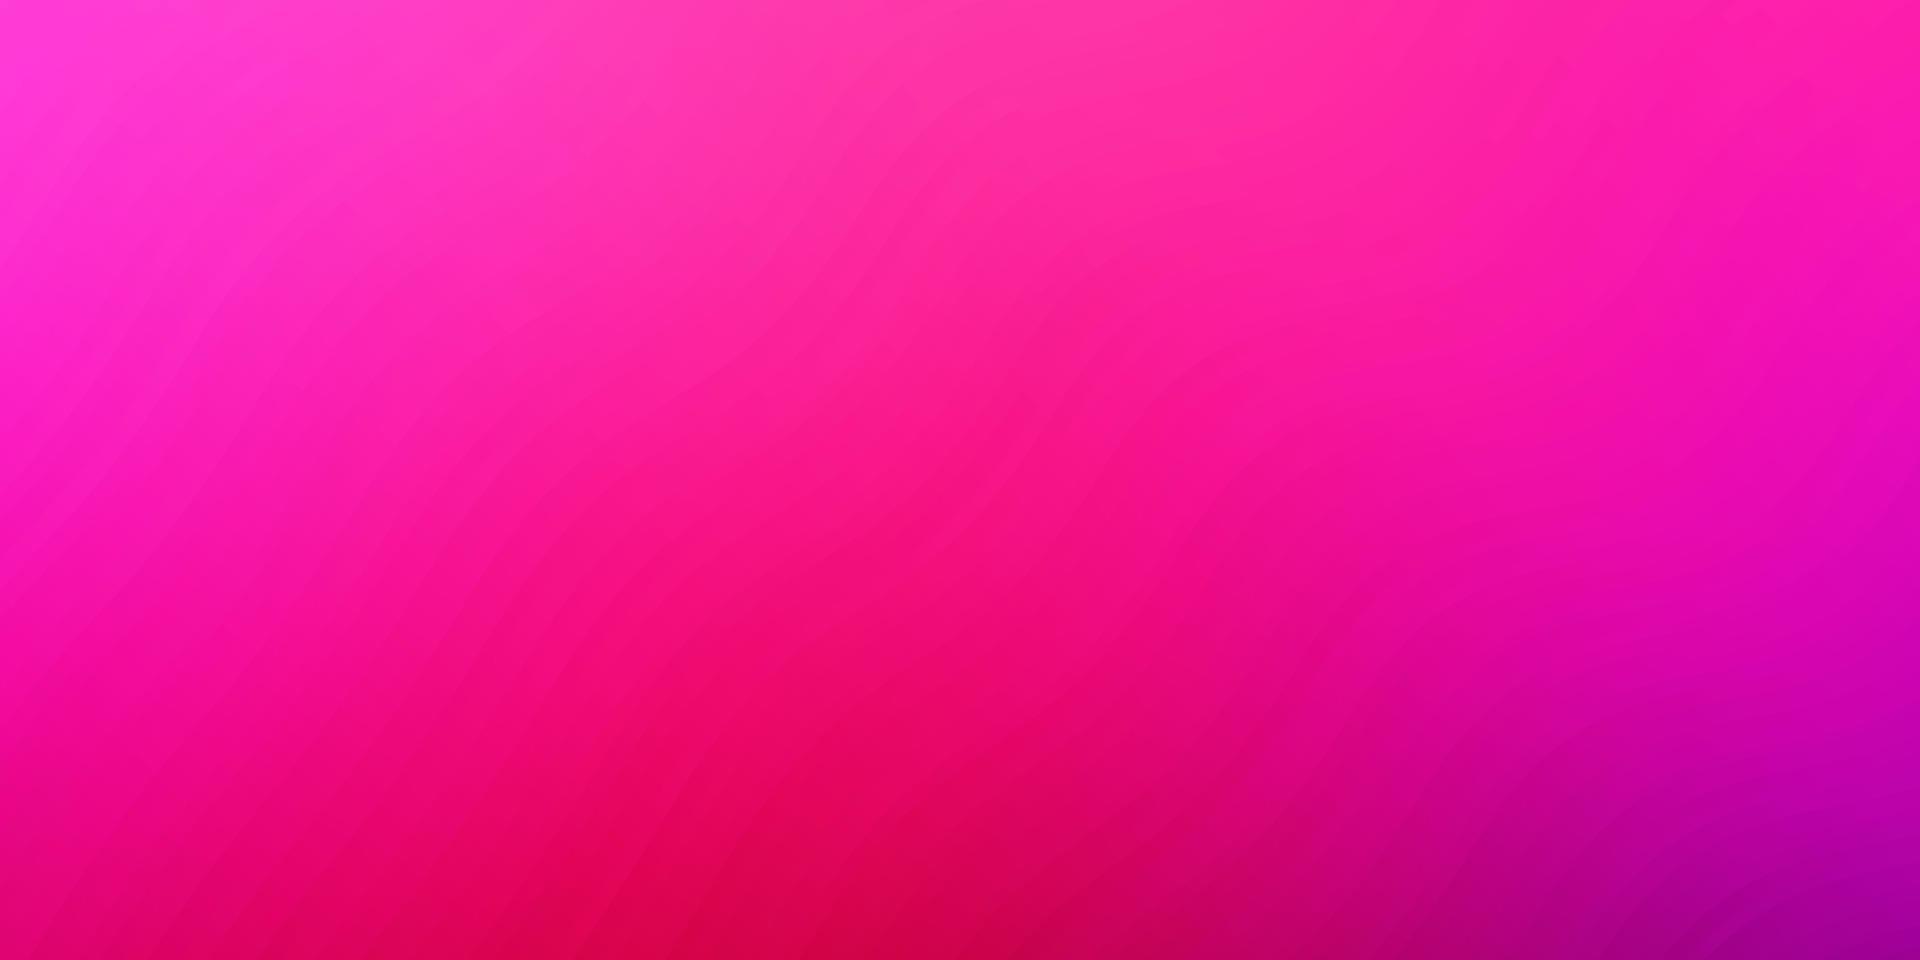 ljuslila, rosa vektorbakgrund med böjda linjer. vektor